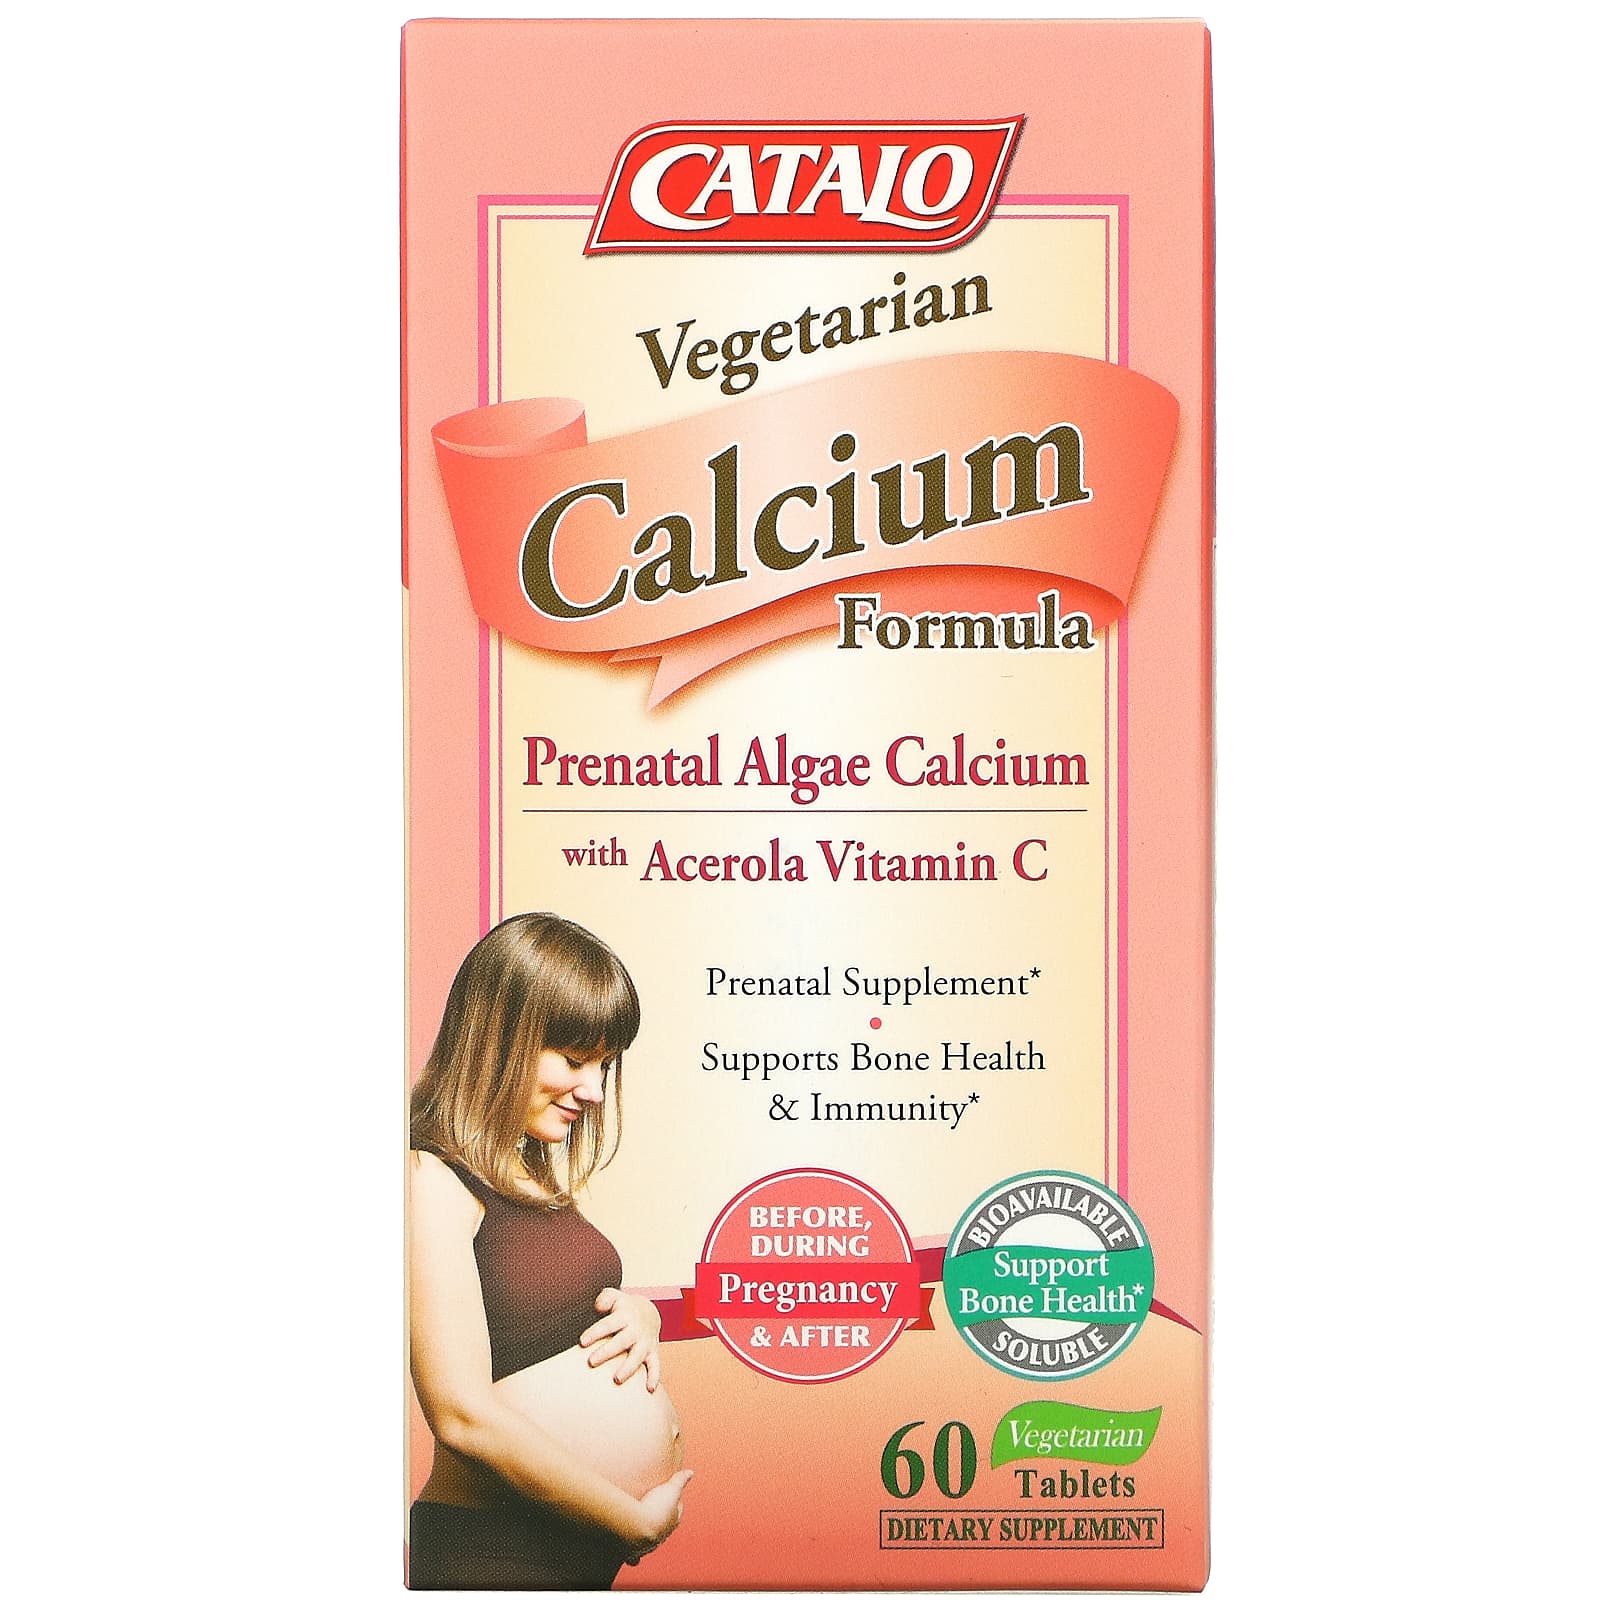 вегетарианская формула с кальцием, кальций из пренатальных водорослей, 60 вегетарианских таблеток Catalo Naturals